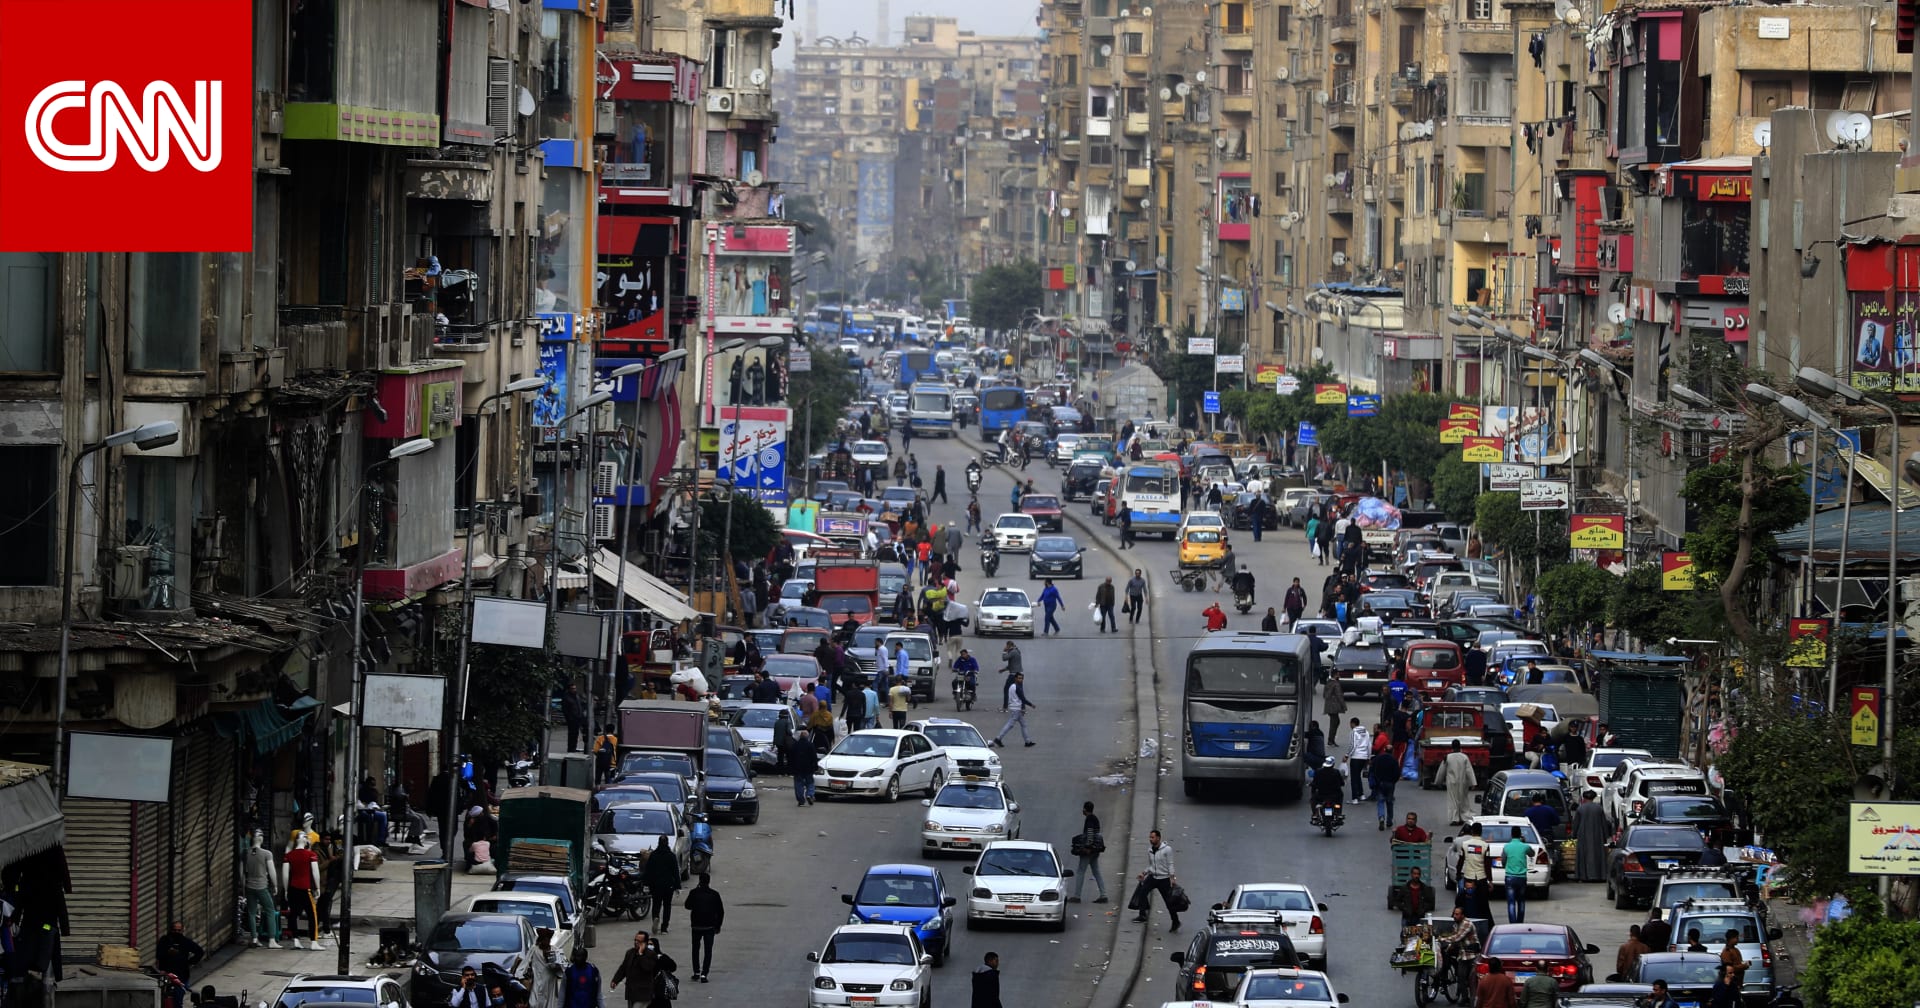 رئيس لجنة مكافحة كورونا في مصر: نتوقع 2000 إصابة يومية في يونيو.. ويحذر من  سيناريو أسوأ  - CNN Arabic